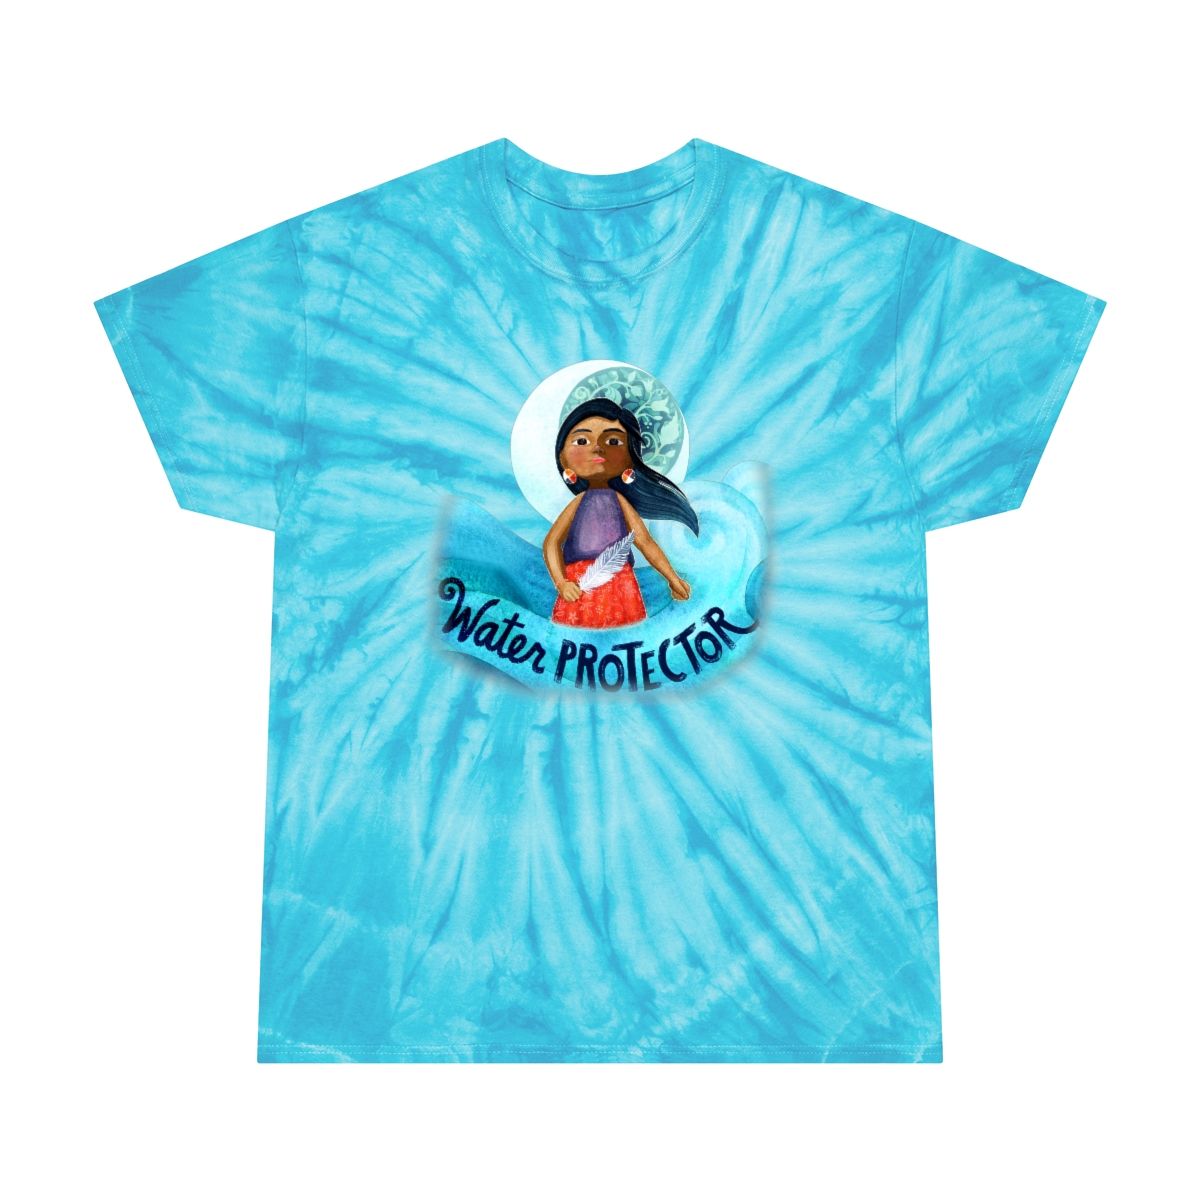 Water Protector Shirt, Tid-Dye Shirt, Tie-Dye Tee, Cyclone, Native Shirt, Native Pride Shirt